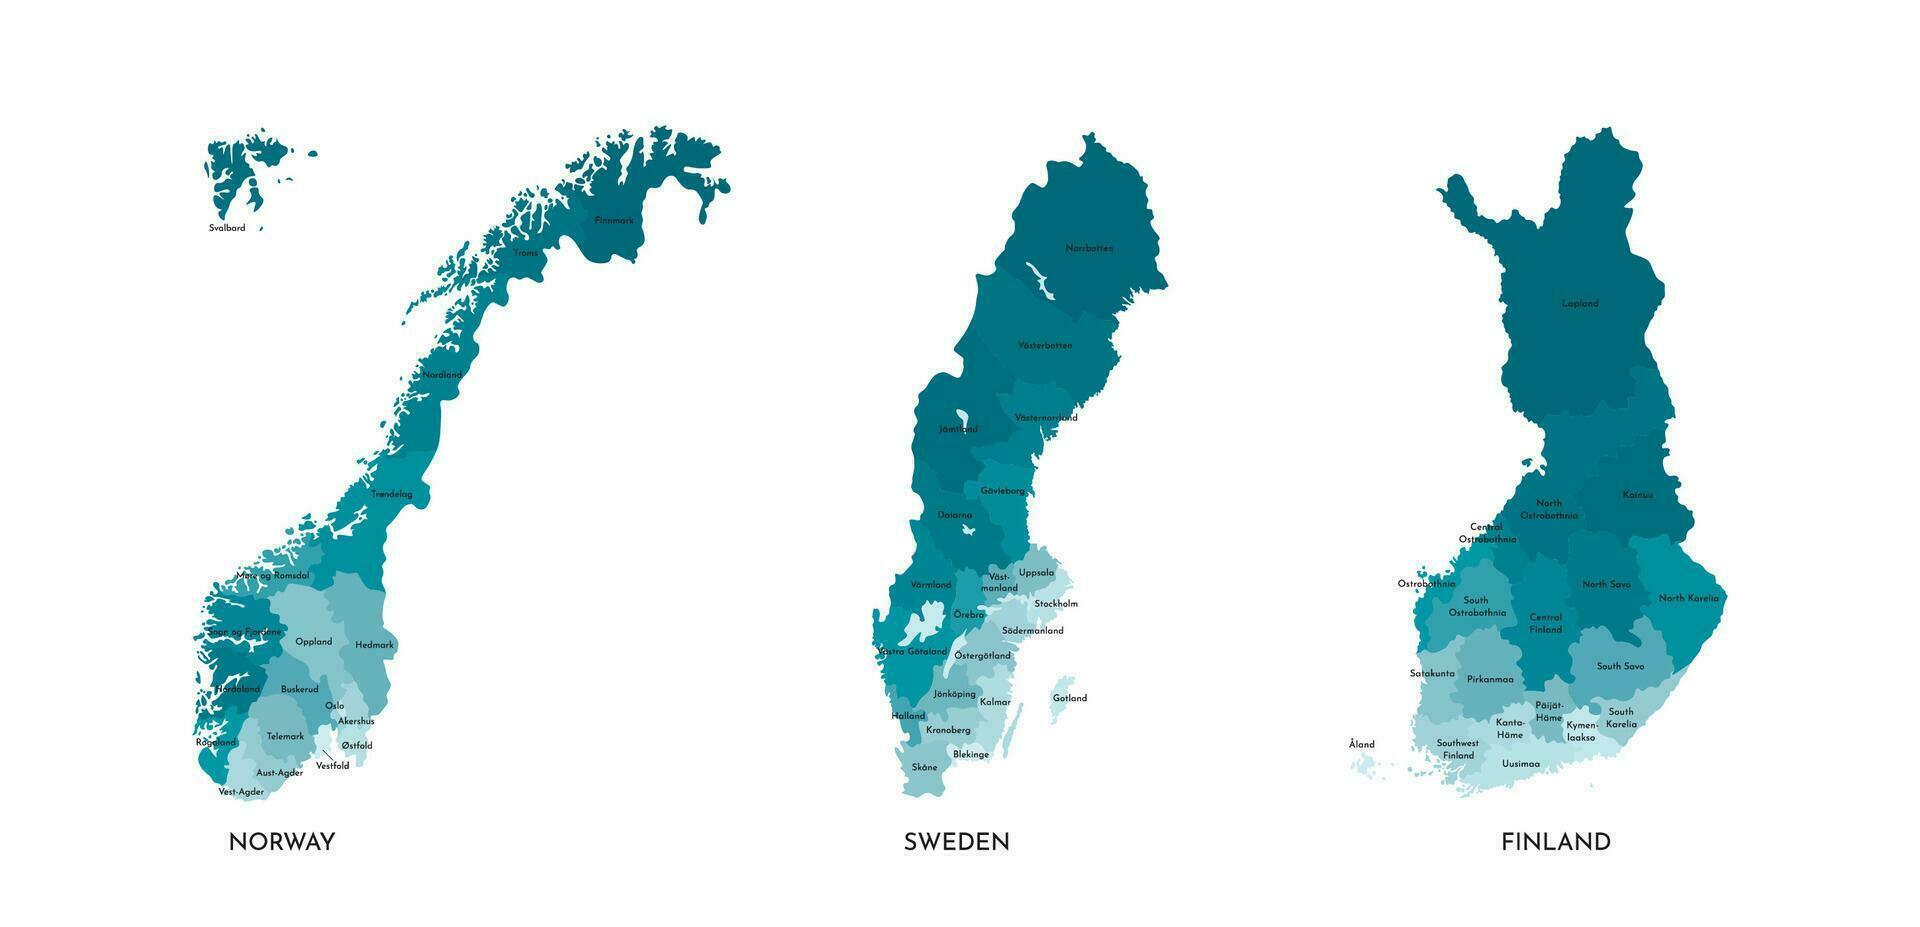 Vektor isoliert Illustration von vereinfacht administrative Karten von Norwegen, Schweden, Finnland. Grenzen und Namen von das Regionen, echt Anteil von Zustände im Beziehung zu jeder andere sind anders